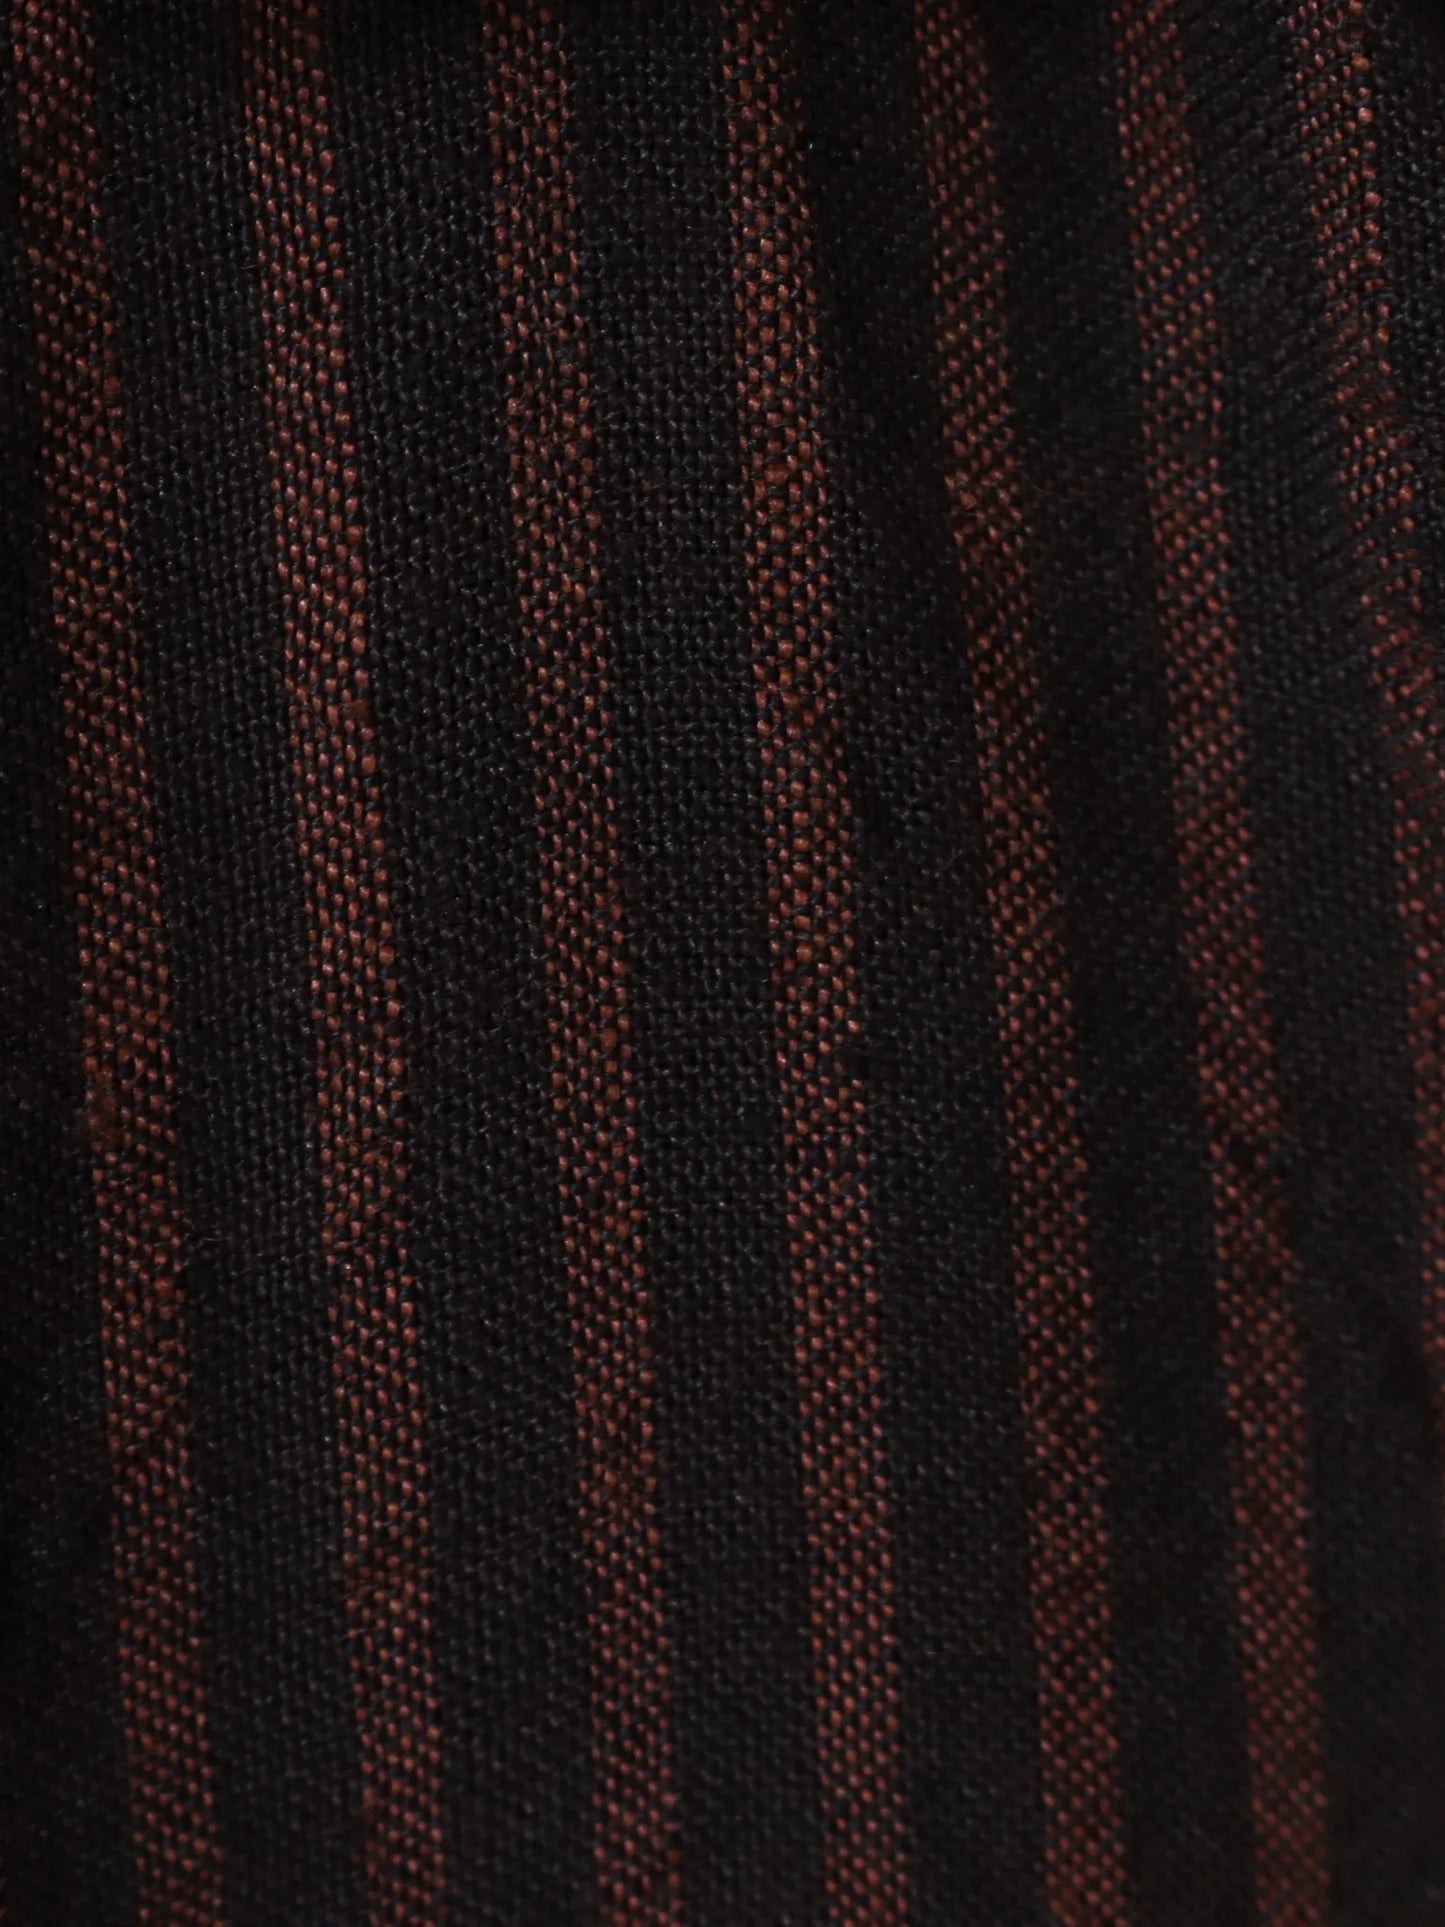 biek-verstappen-shirt-irish-linen-brown-red-6